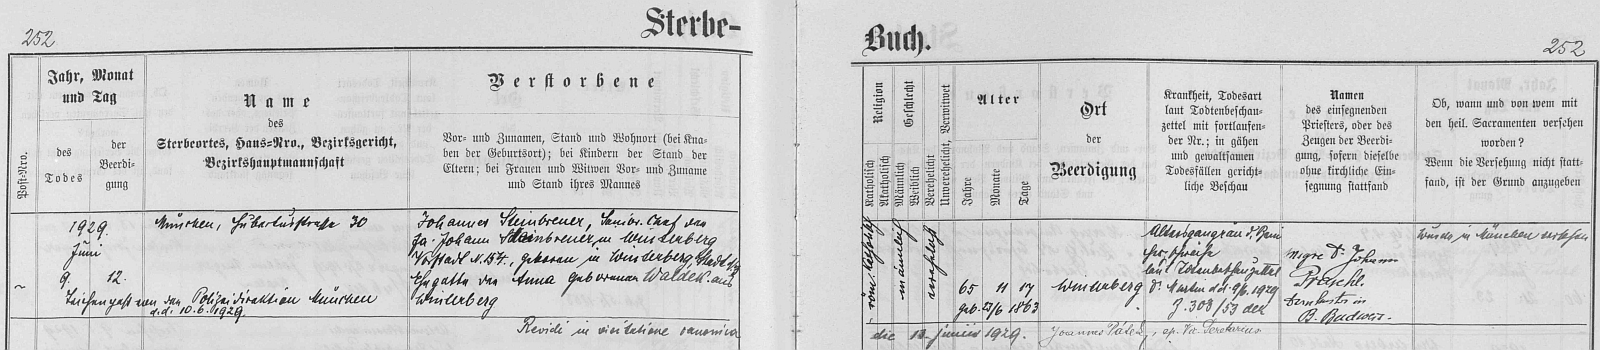 Záznam vimperské úmrtní matriky o skonu jejího děda z matčiny strany, tj. Johanna Steinbrenera mladšího, v bavorském Mnichově